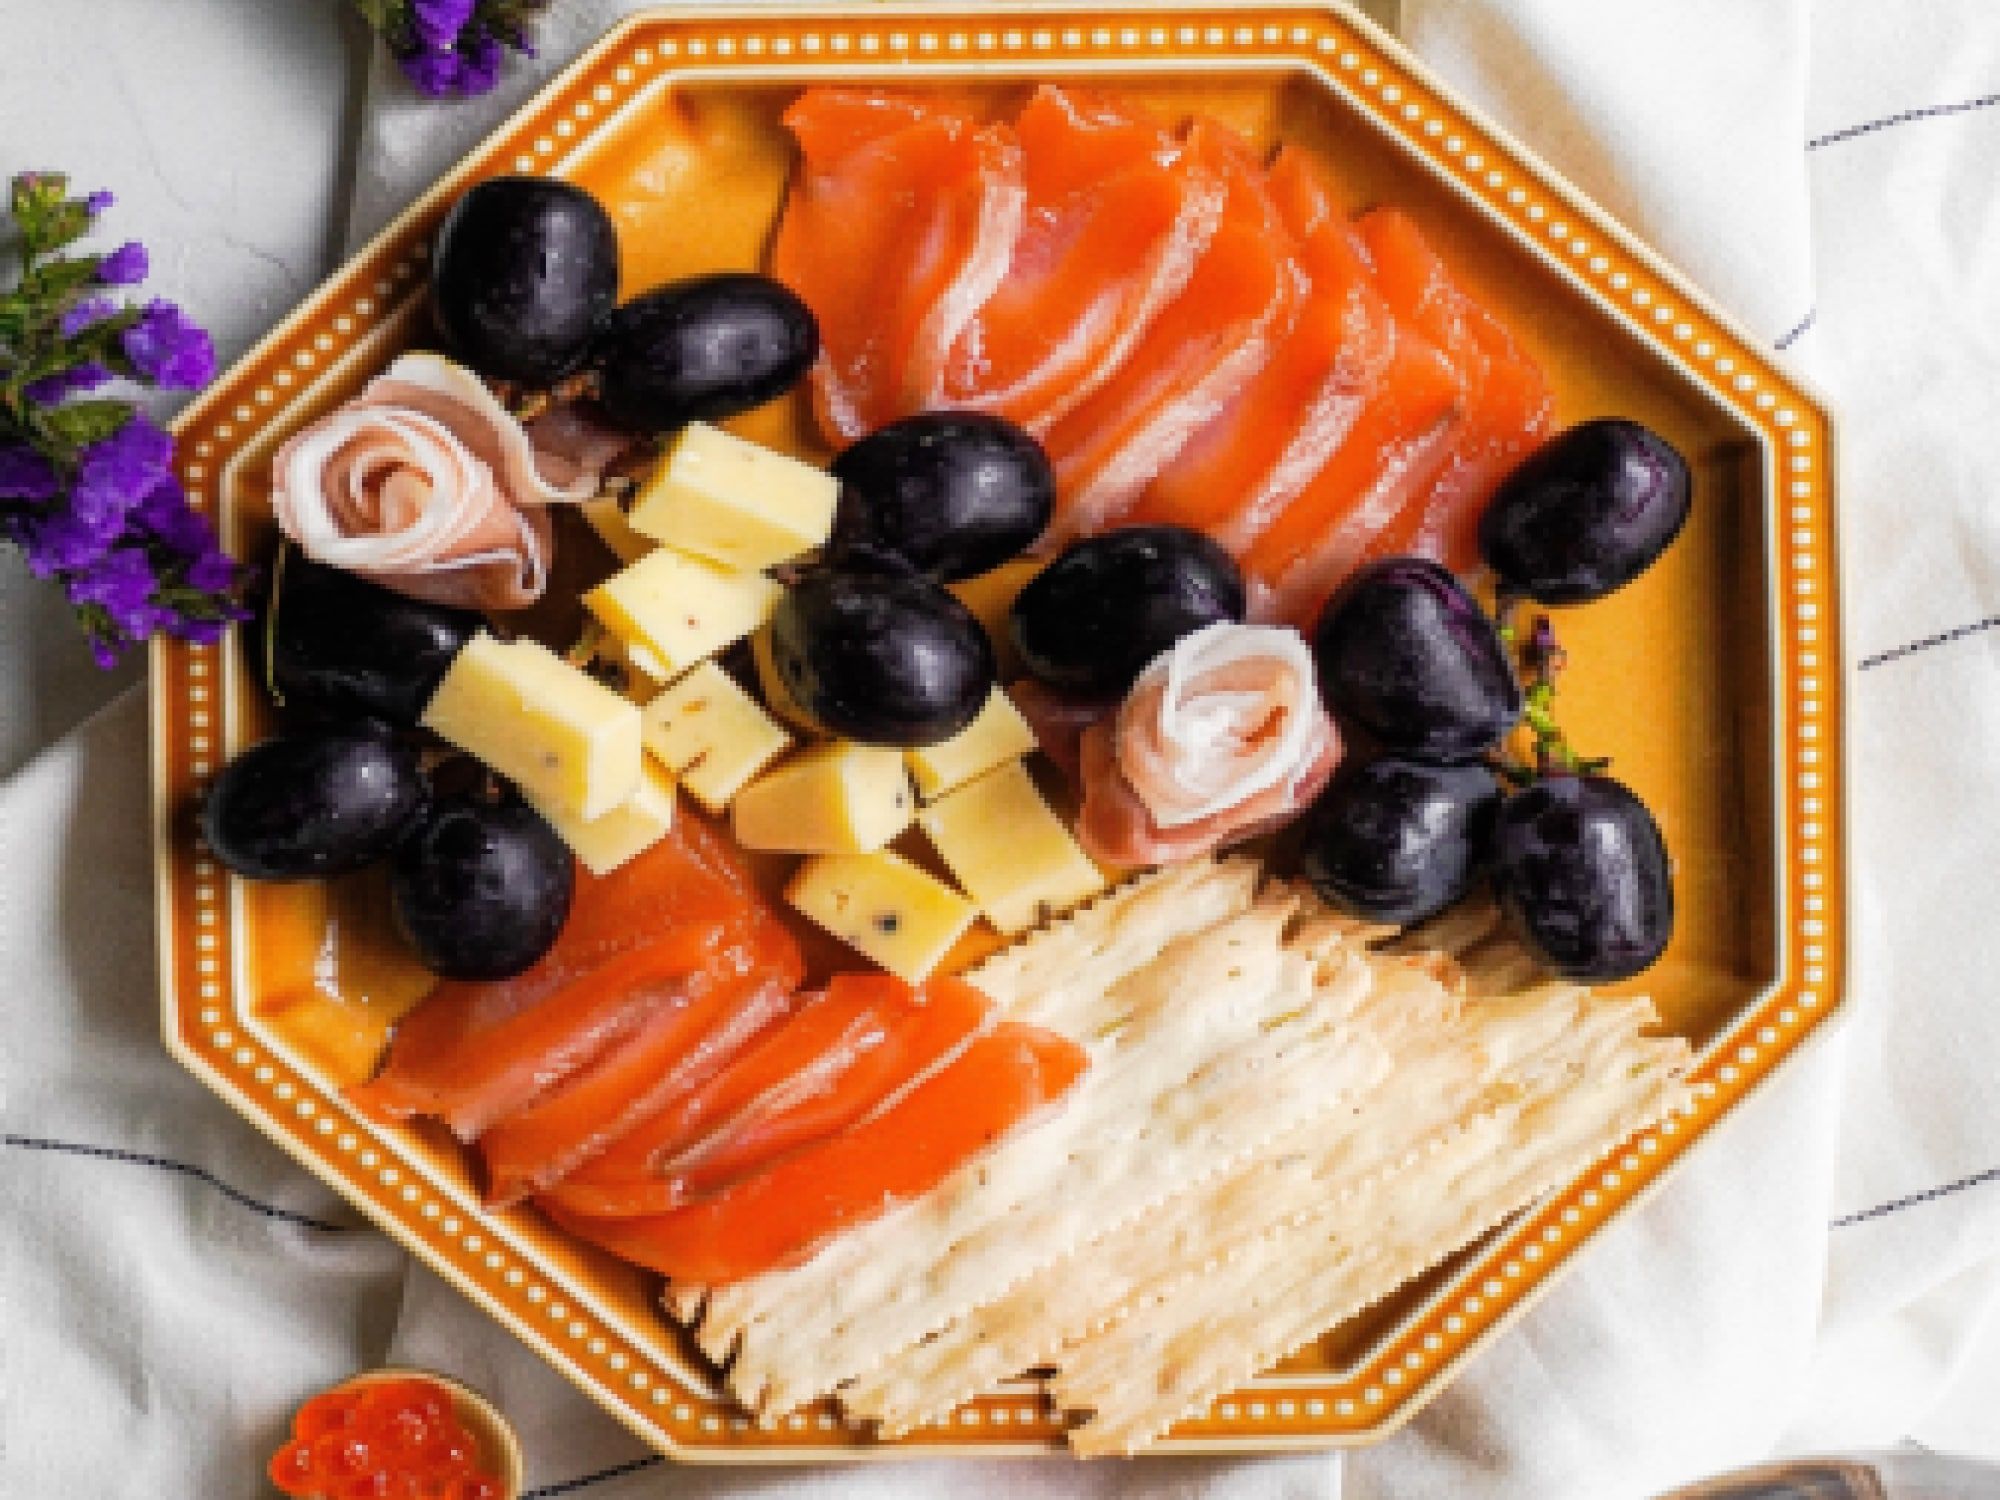 Japanese sashimi charcuterie board